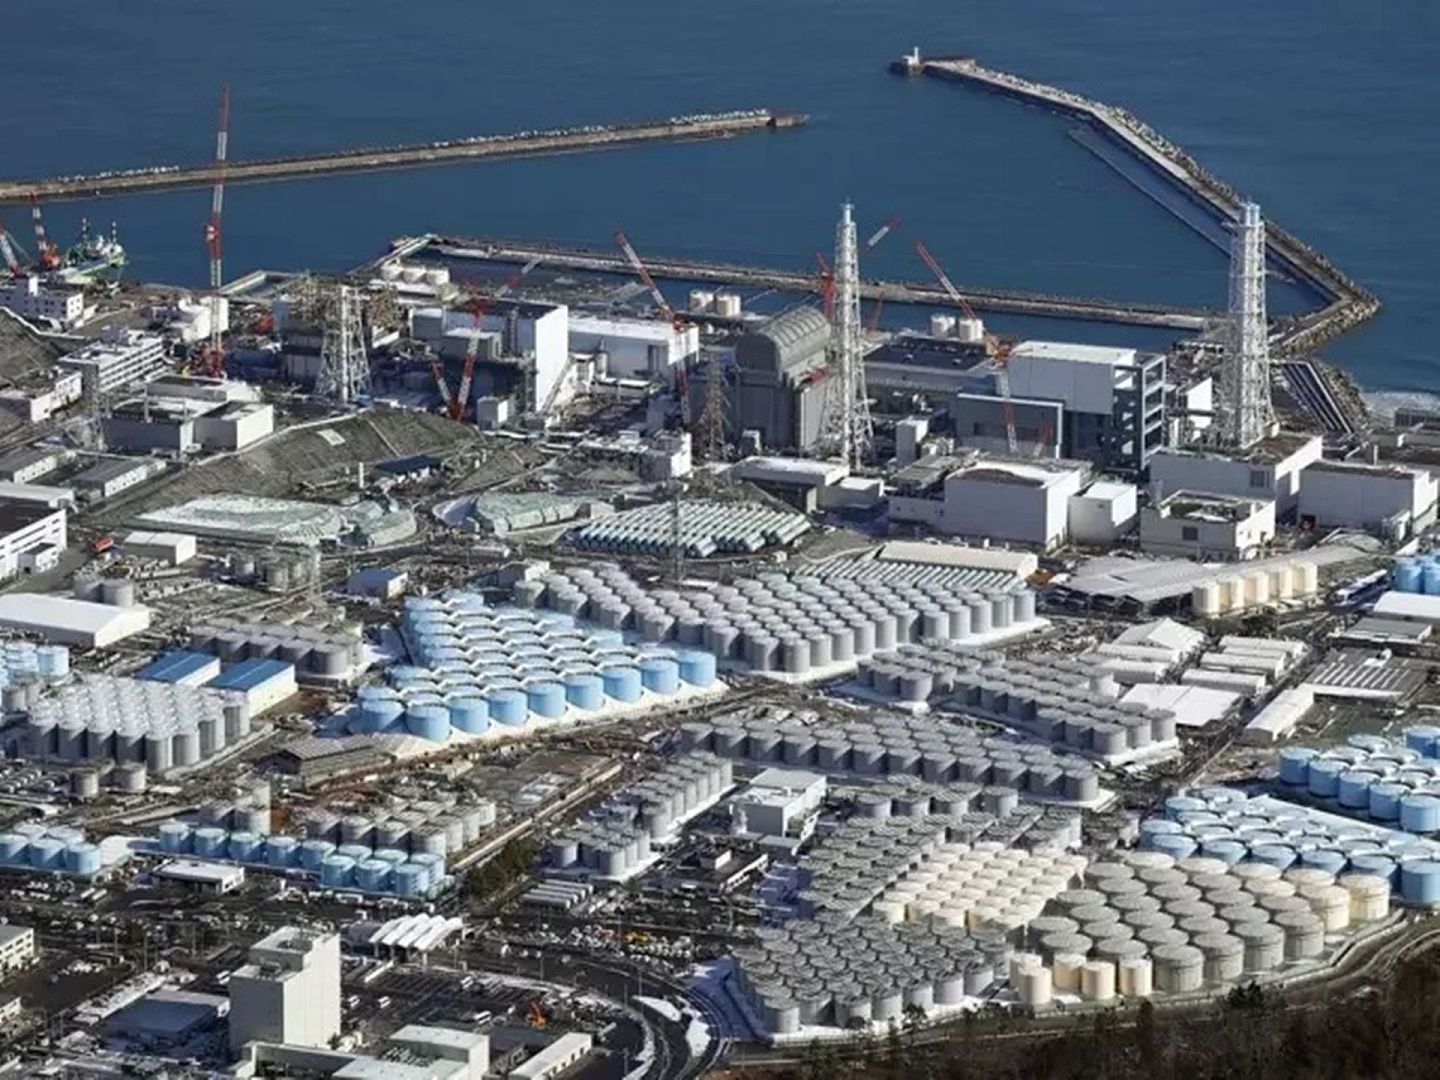 福岛核电站的影响不仅仅是核事故、核废水，它直接导致全球核工业遭遇质疑，西屋公司因此在2017年破产。（美联社）